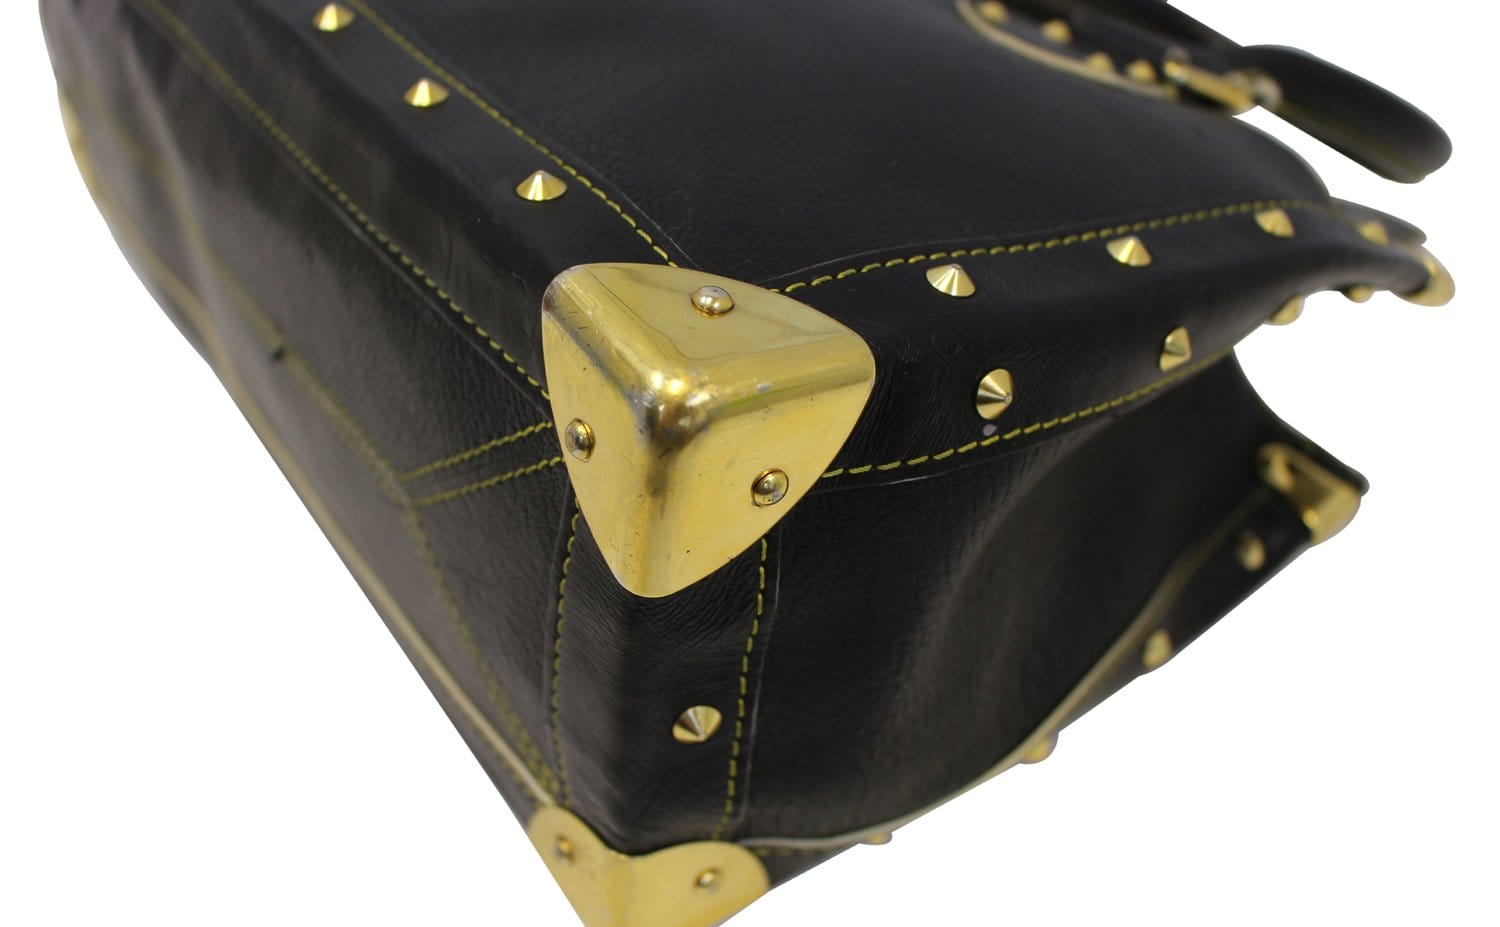 Louis Vuitton, Bags, Louis Vuitton Suhali Le Fabuleux Black Leather Bag